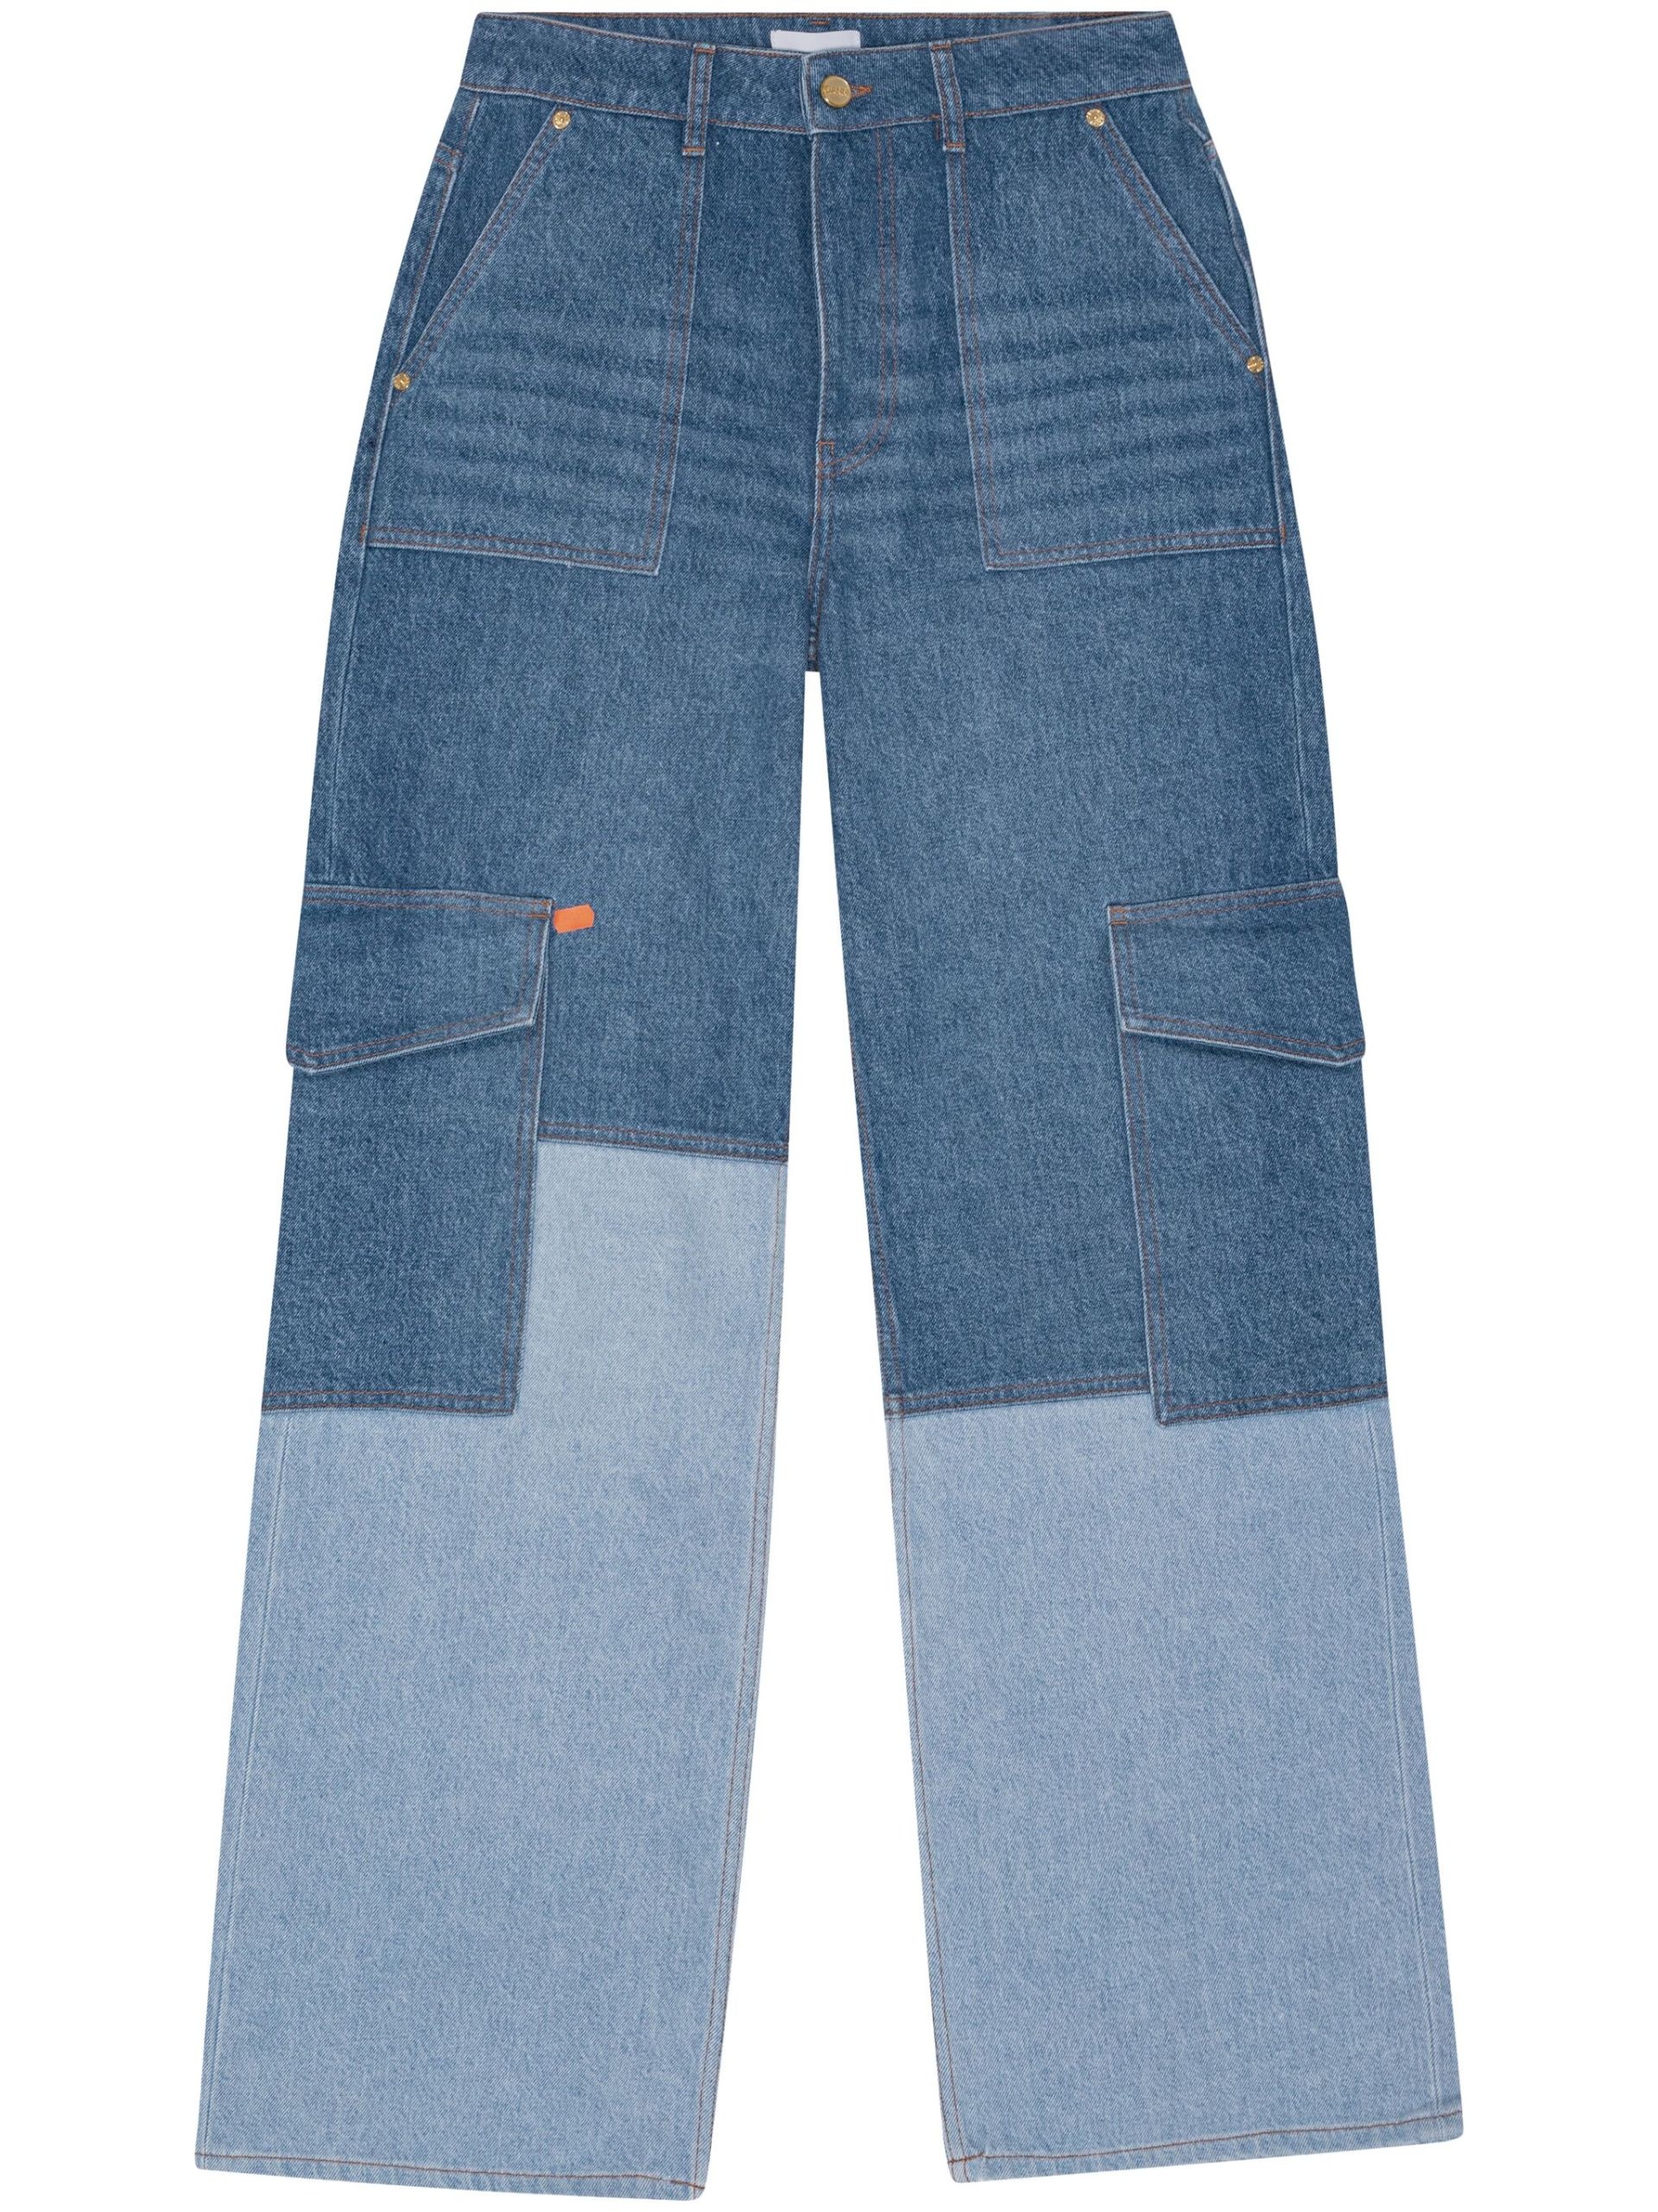 Blue Patchwork Wide-Leg Jeans - 1